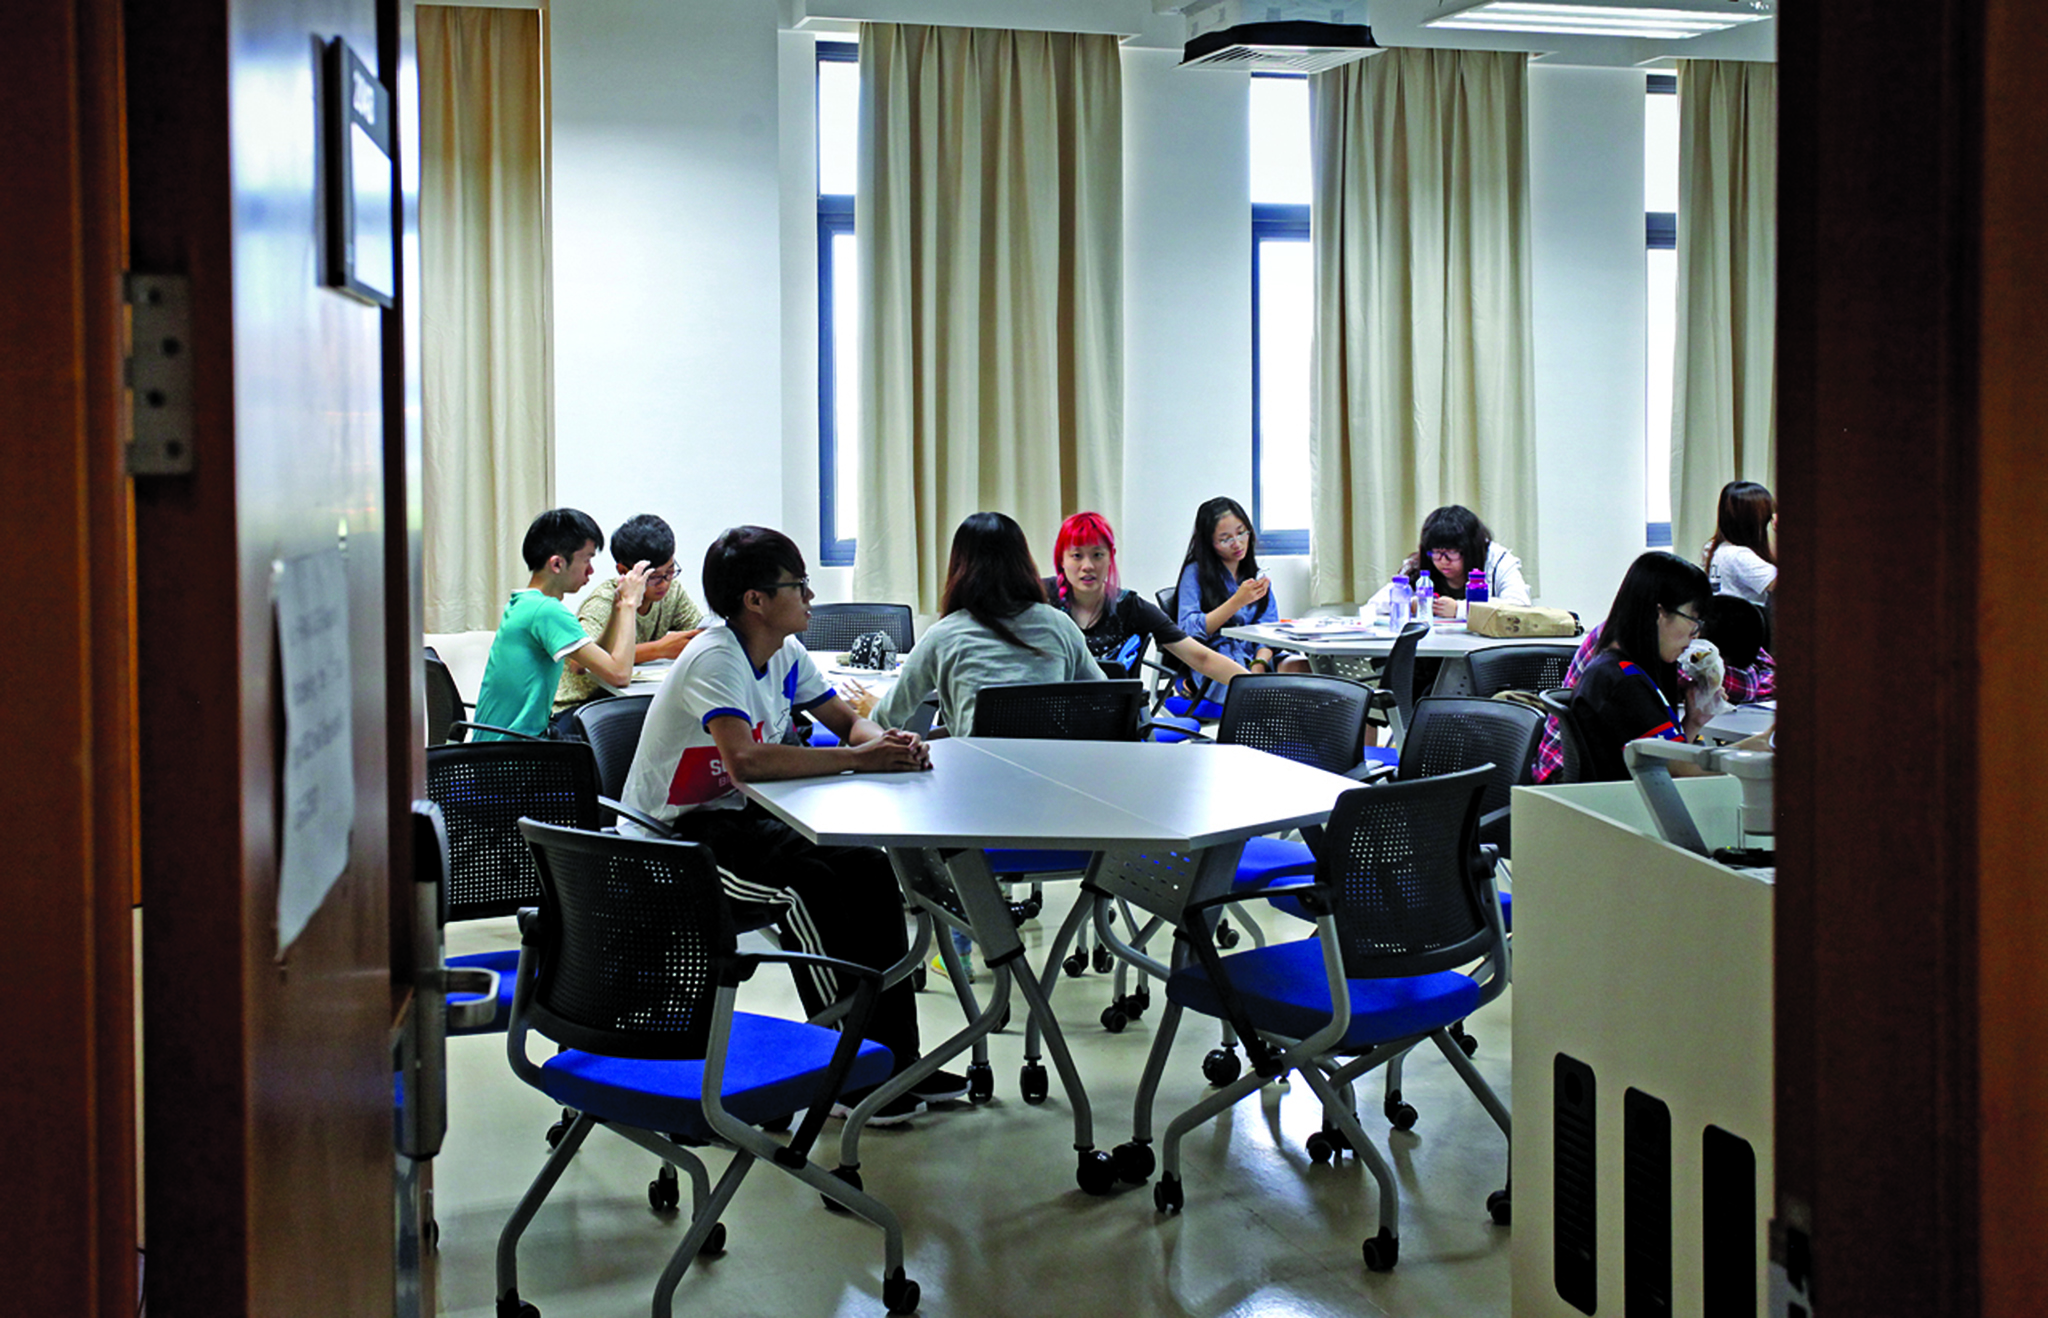 Ensino | Subsídio de propinas actualizado e alargado a toda a província de Guangdong